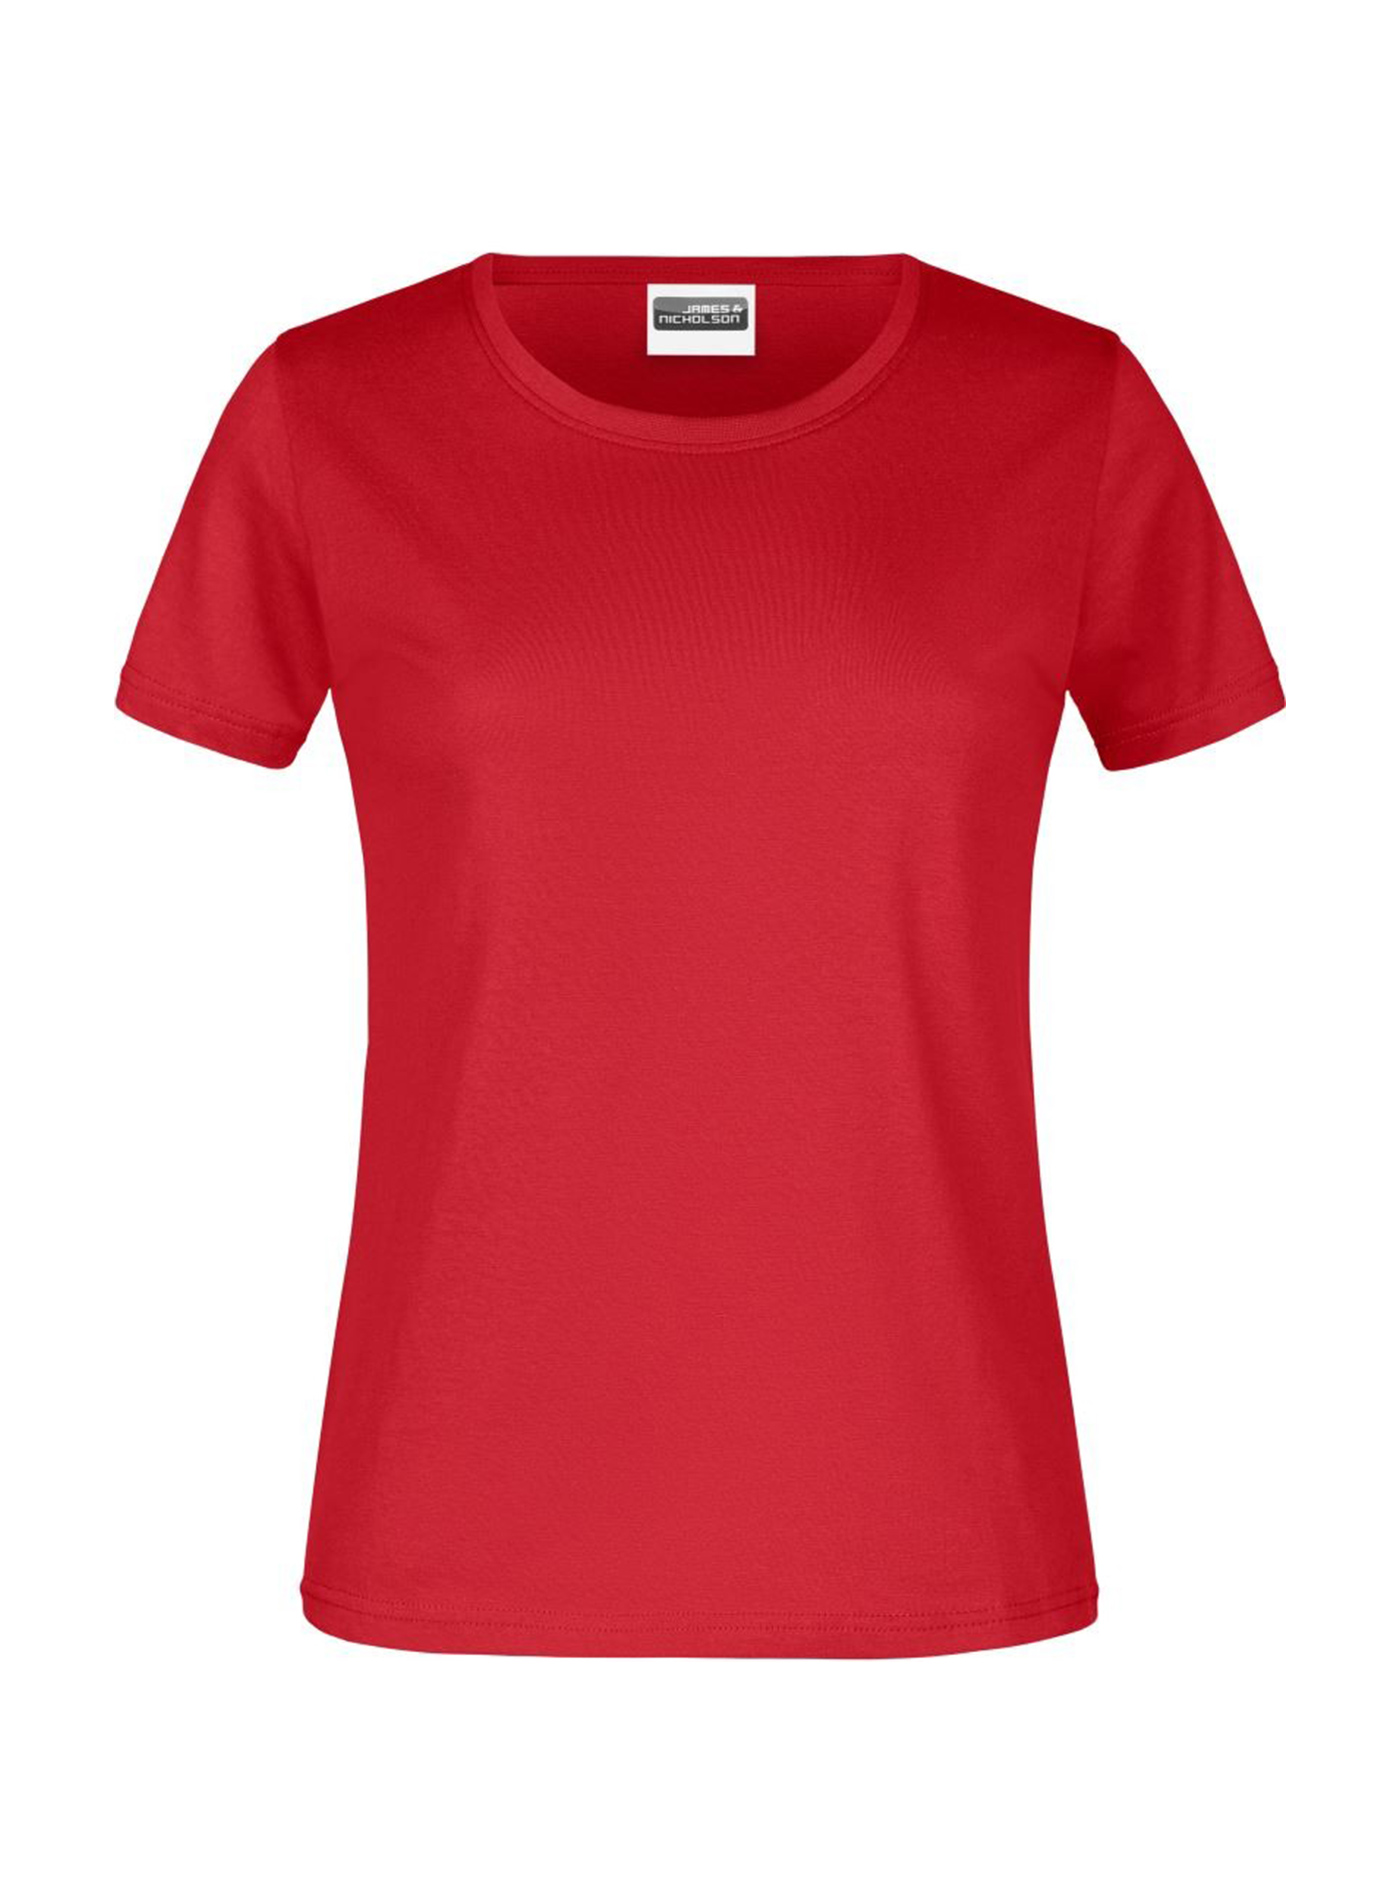 Dámské tričko James & Nicholson basic - Červená M